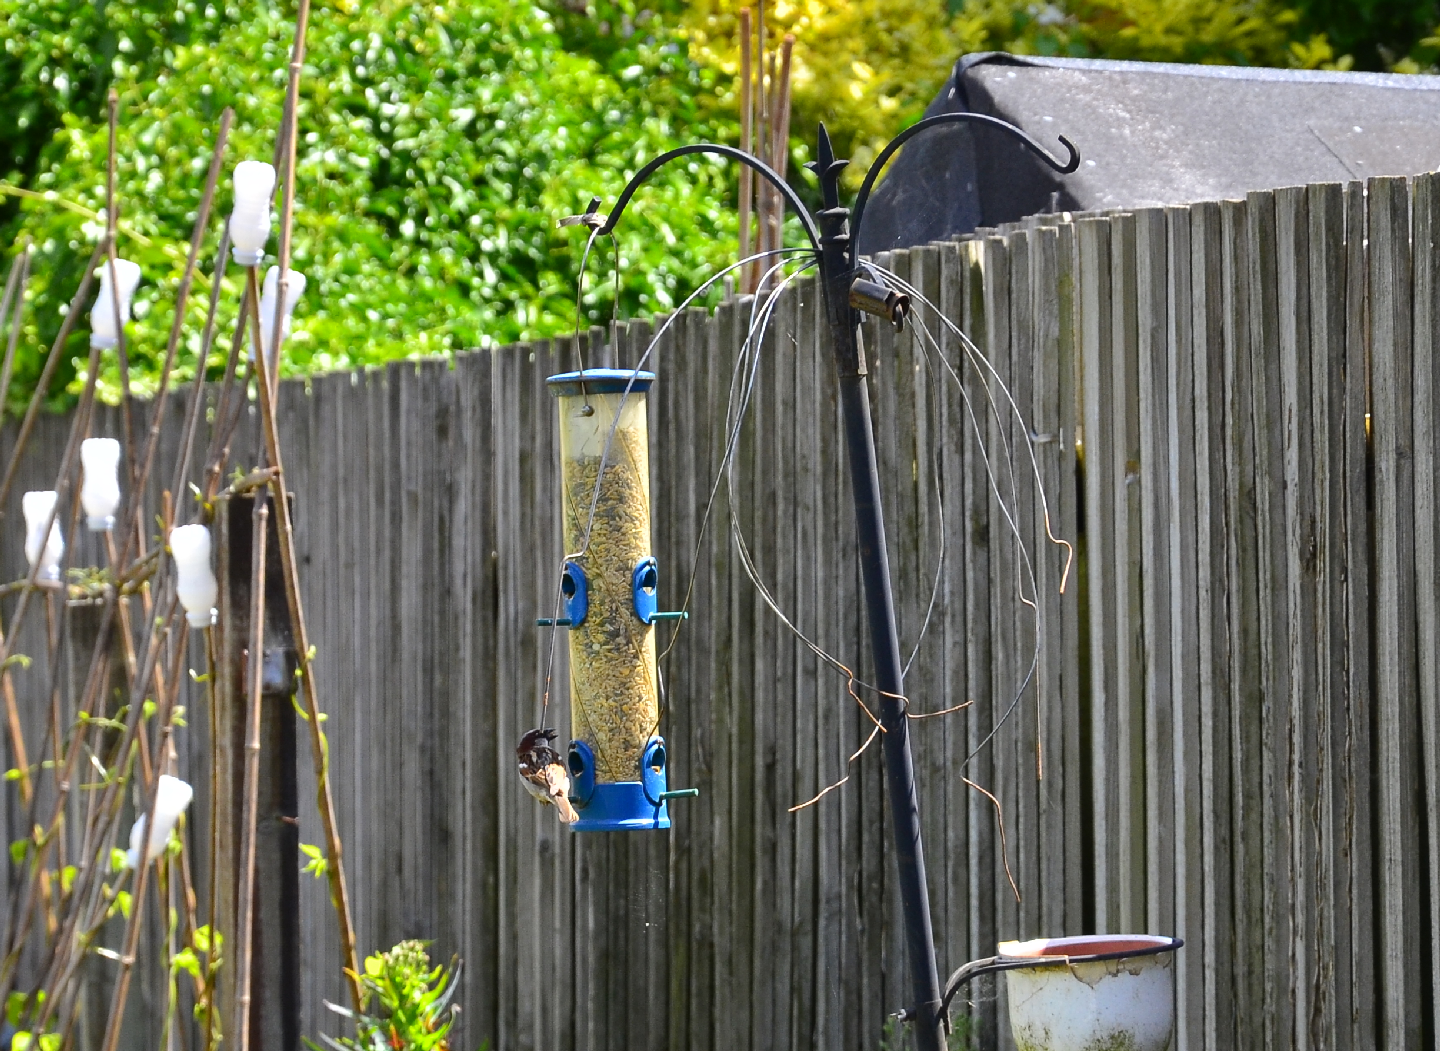 Sparrow on bird feeder